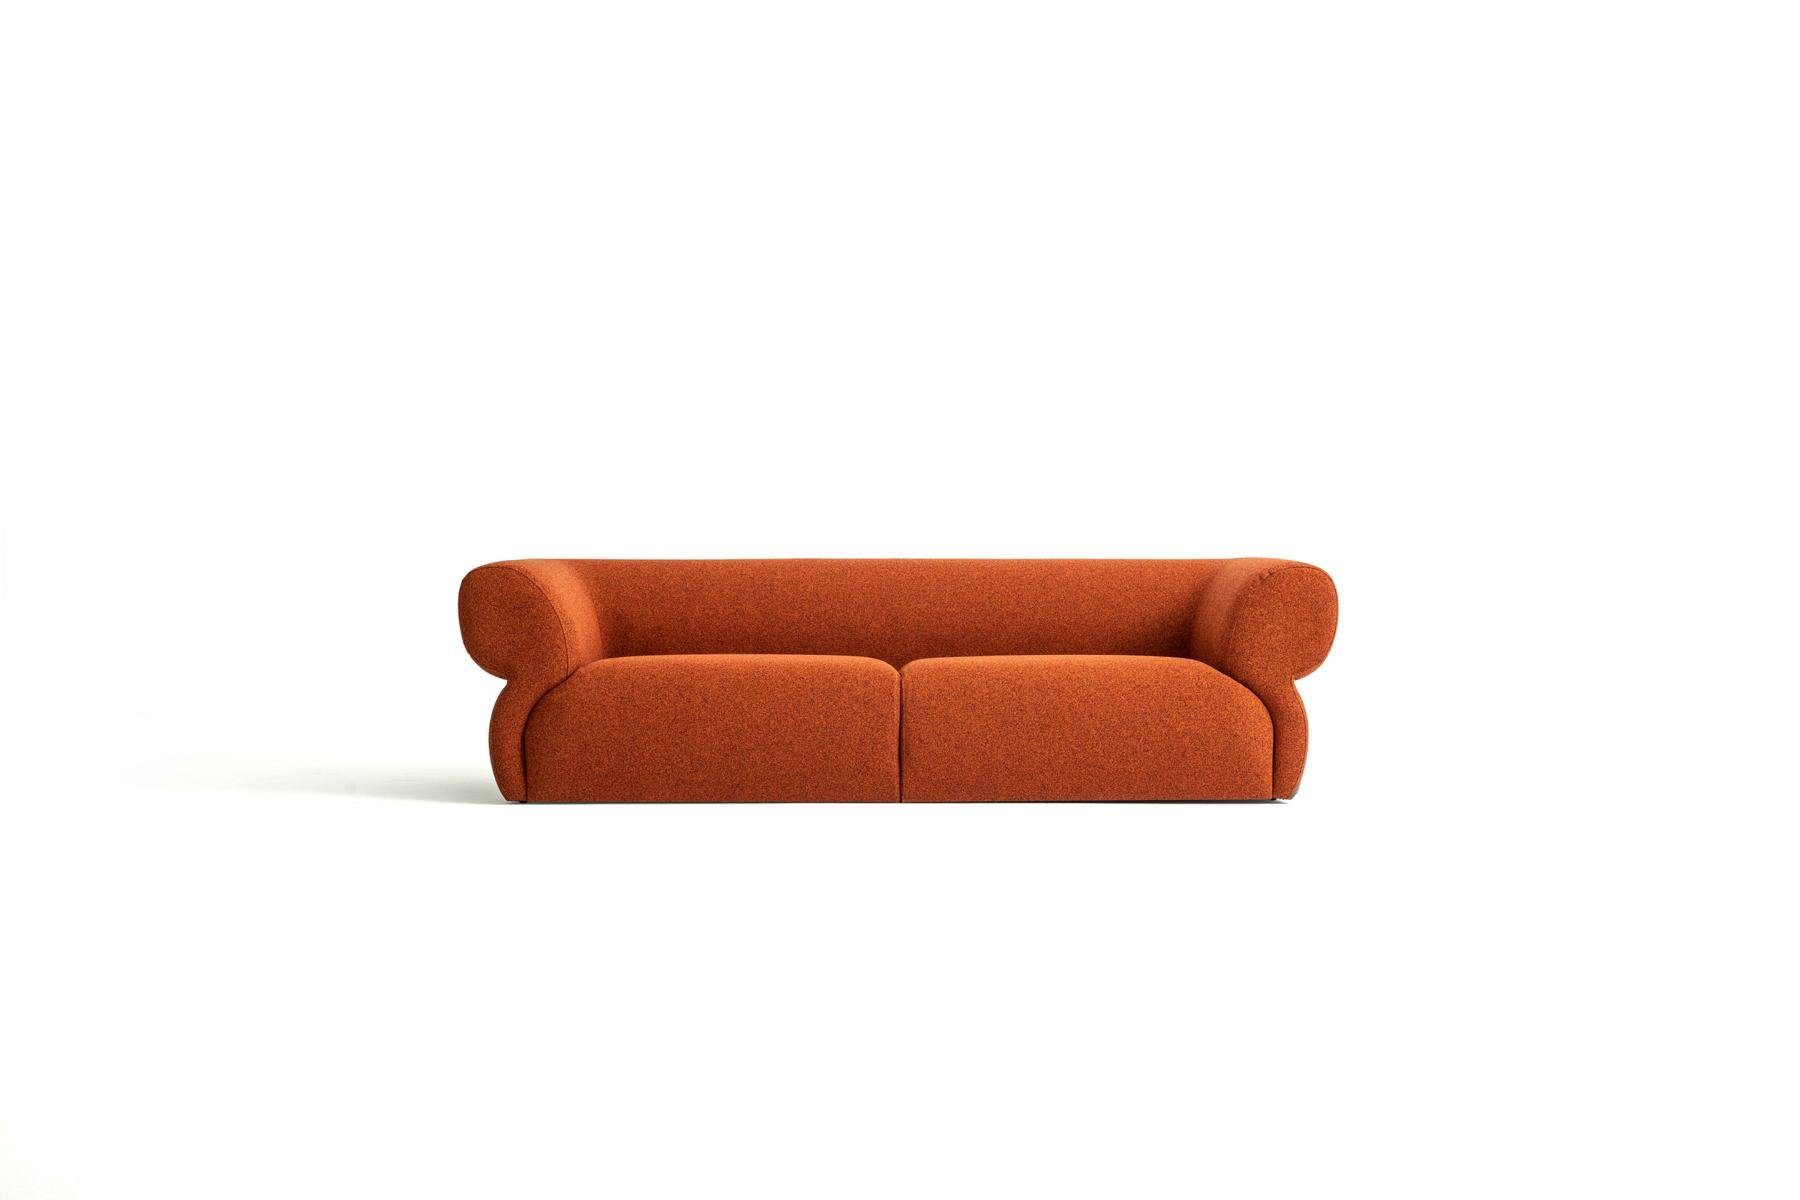 JVmoebel 3-Sitzer Luxus Möbel Design Made 3 250cm Europe in Wohnzimmer Sitzer Polstersofa Neu, Sofa Orange